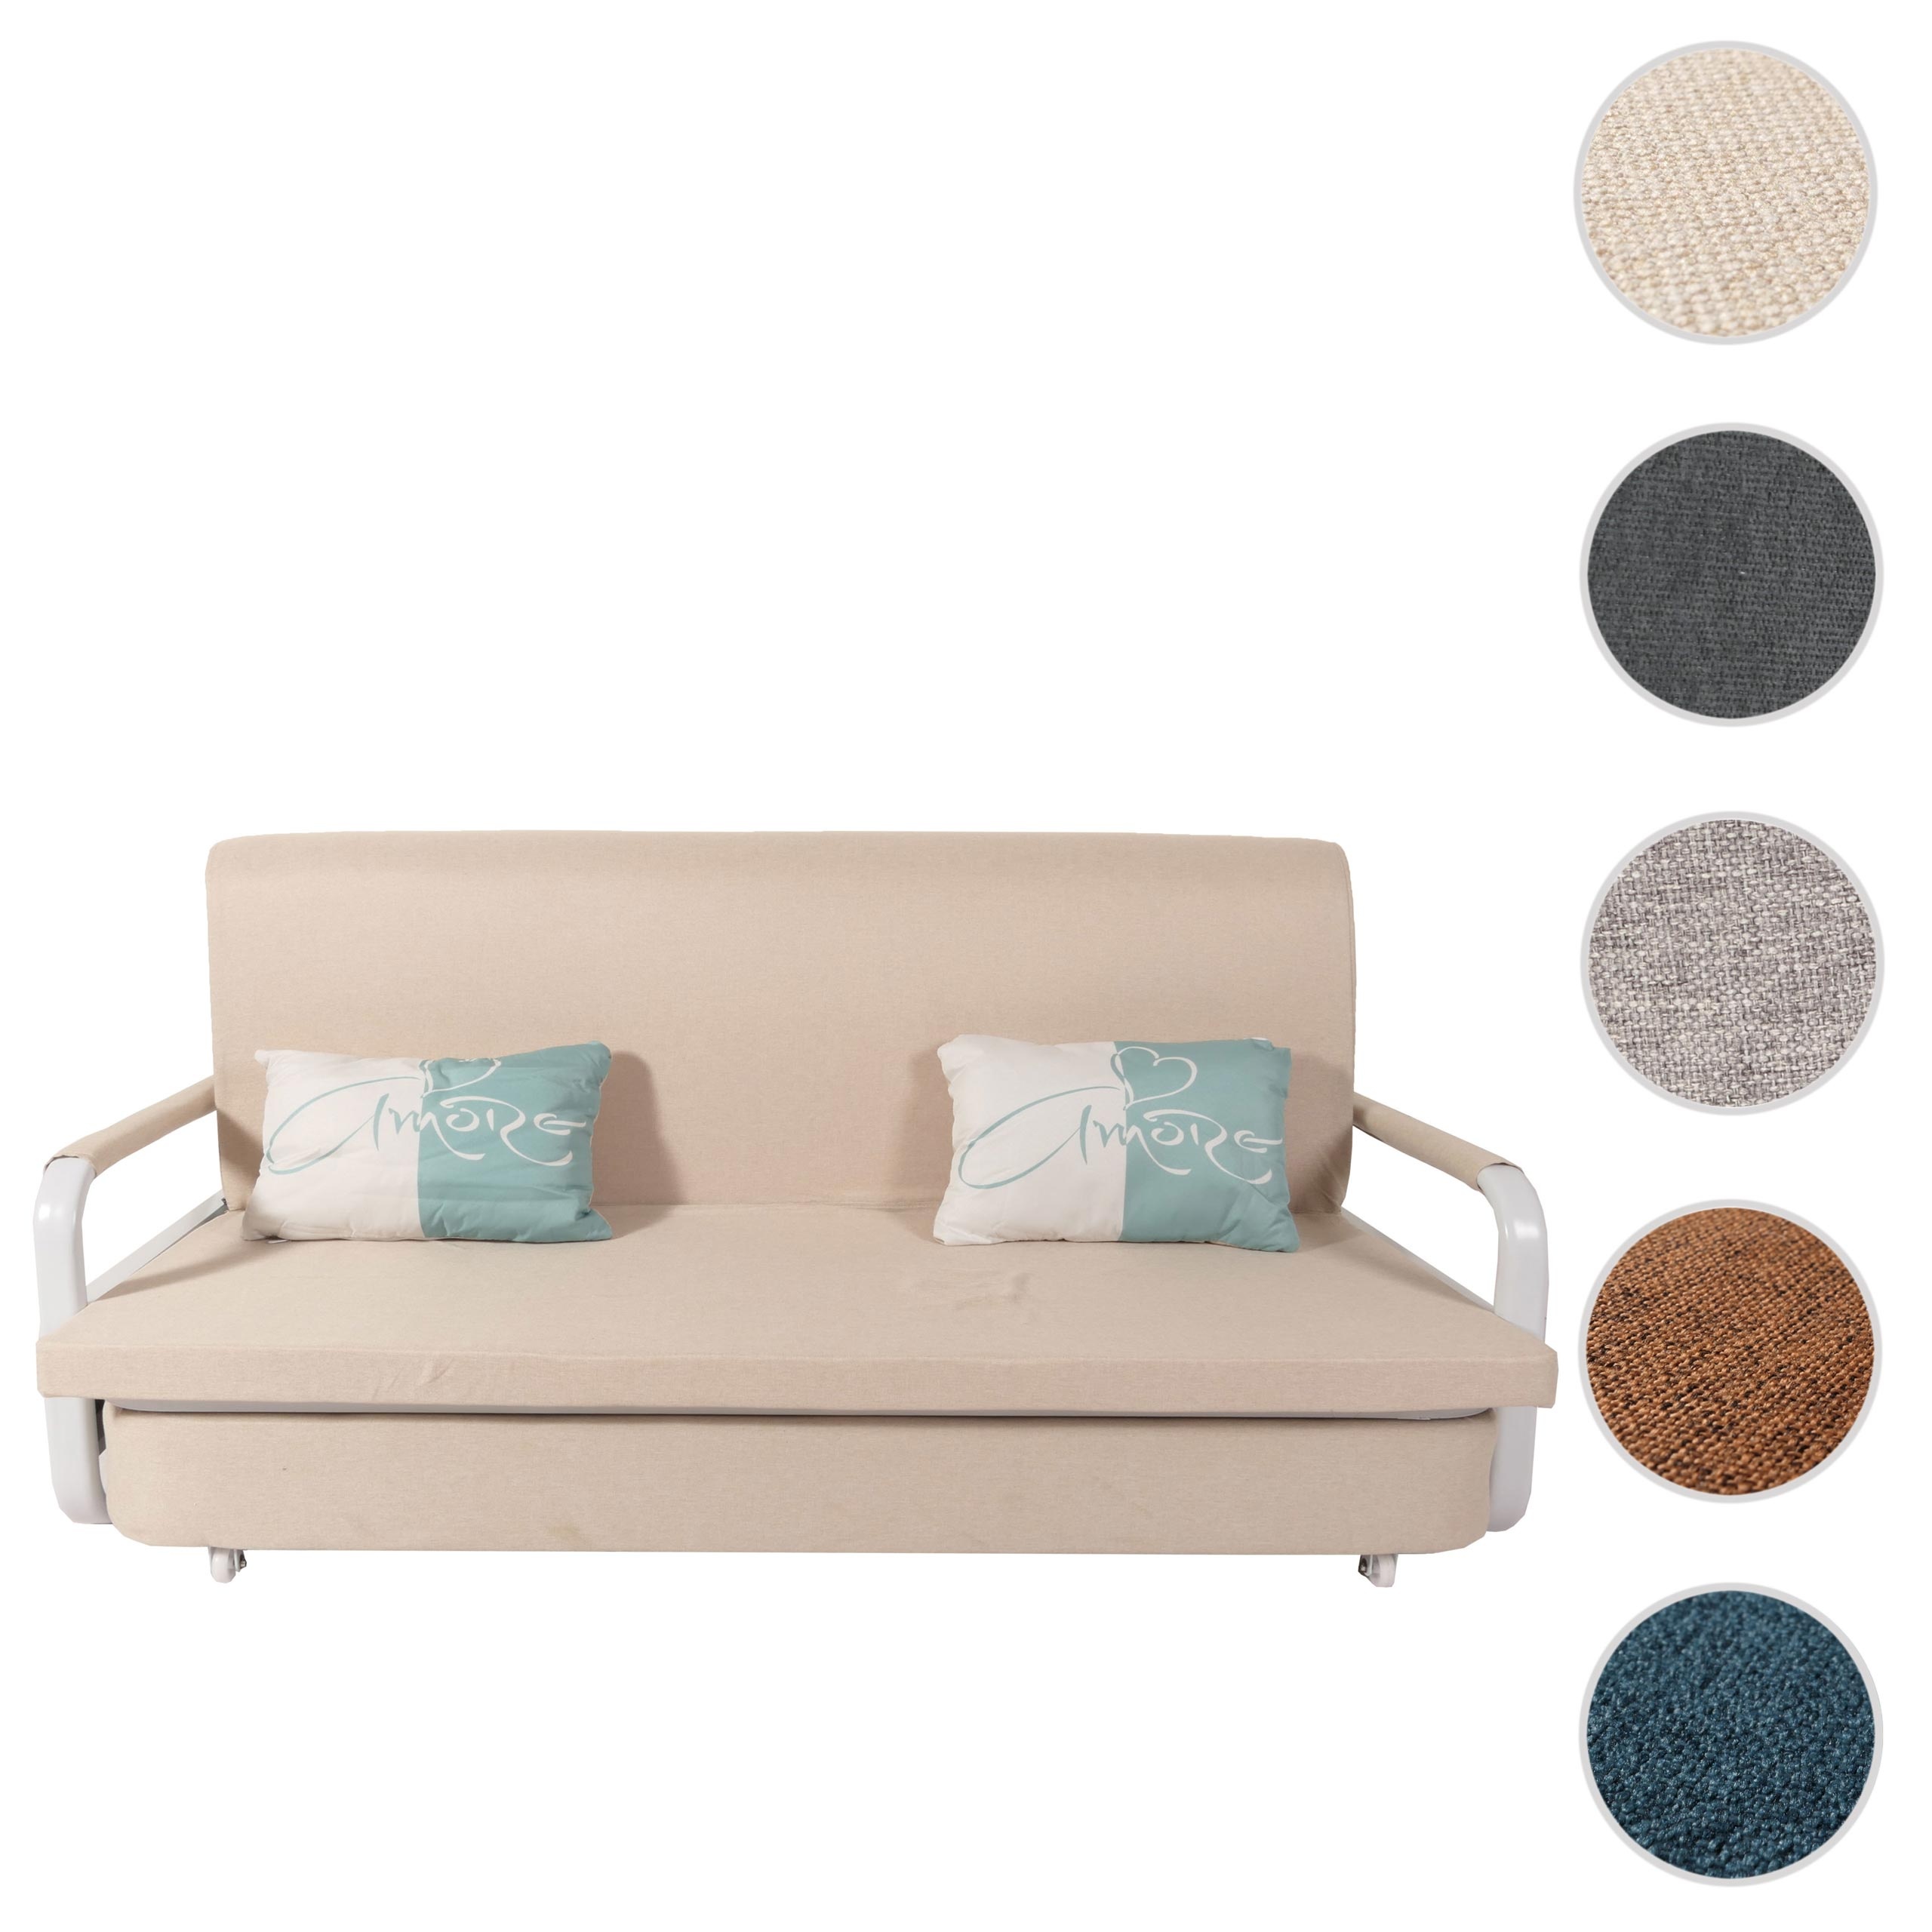 Schlafsofa HWC-M83, Schlafcouch Couch Sofa, Schlaffunktion Bettkasten Liegefl√§che, 190x185cm ~ Stoff/Textil beige